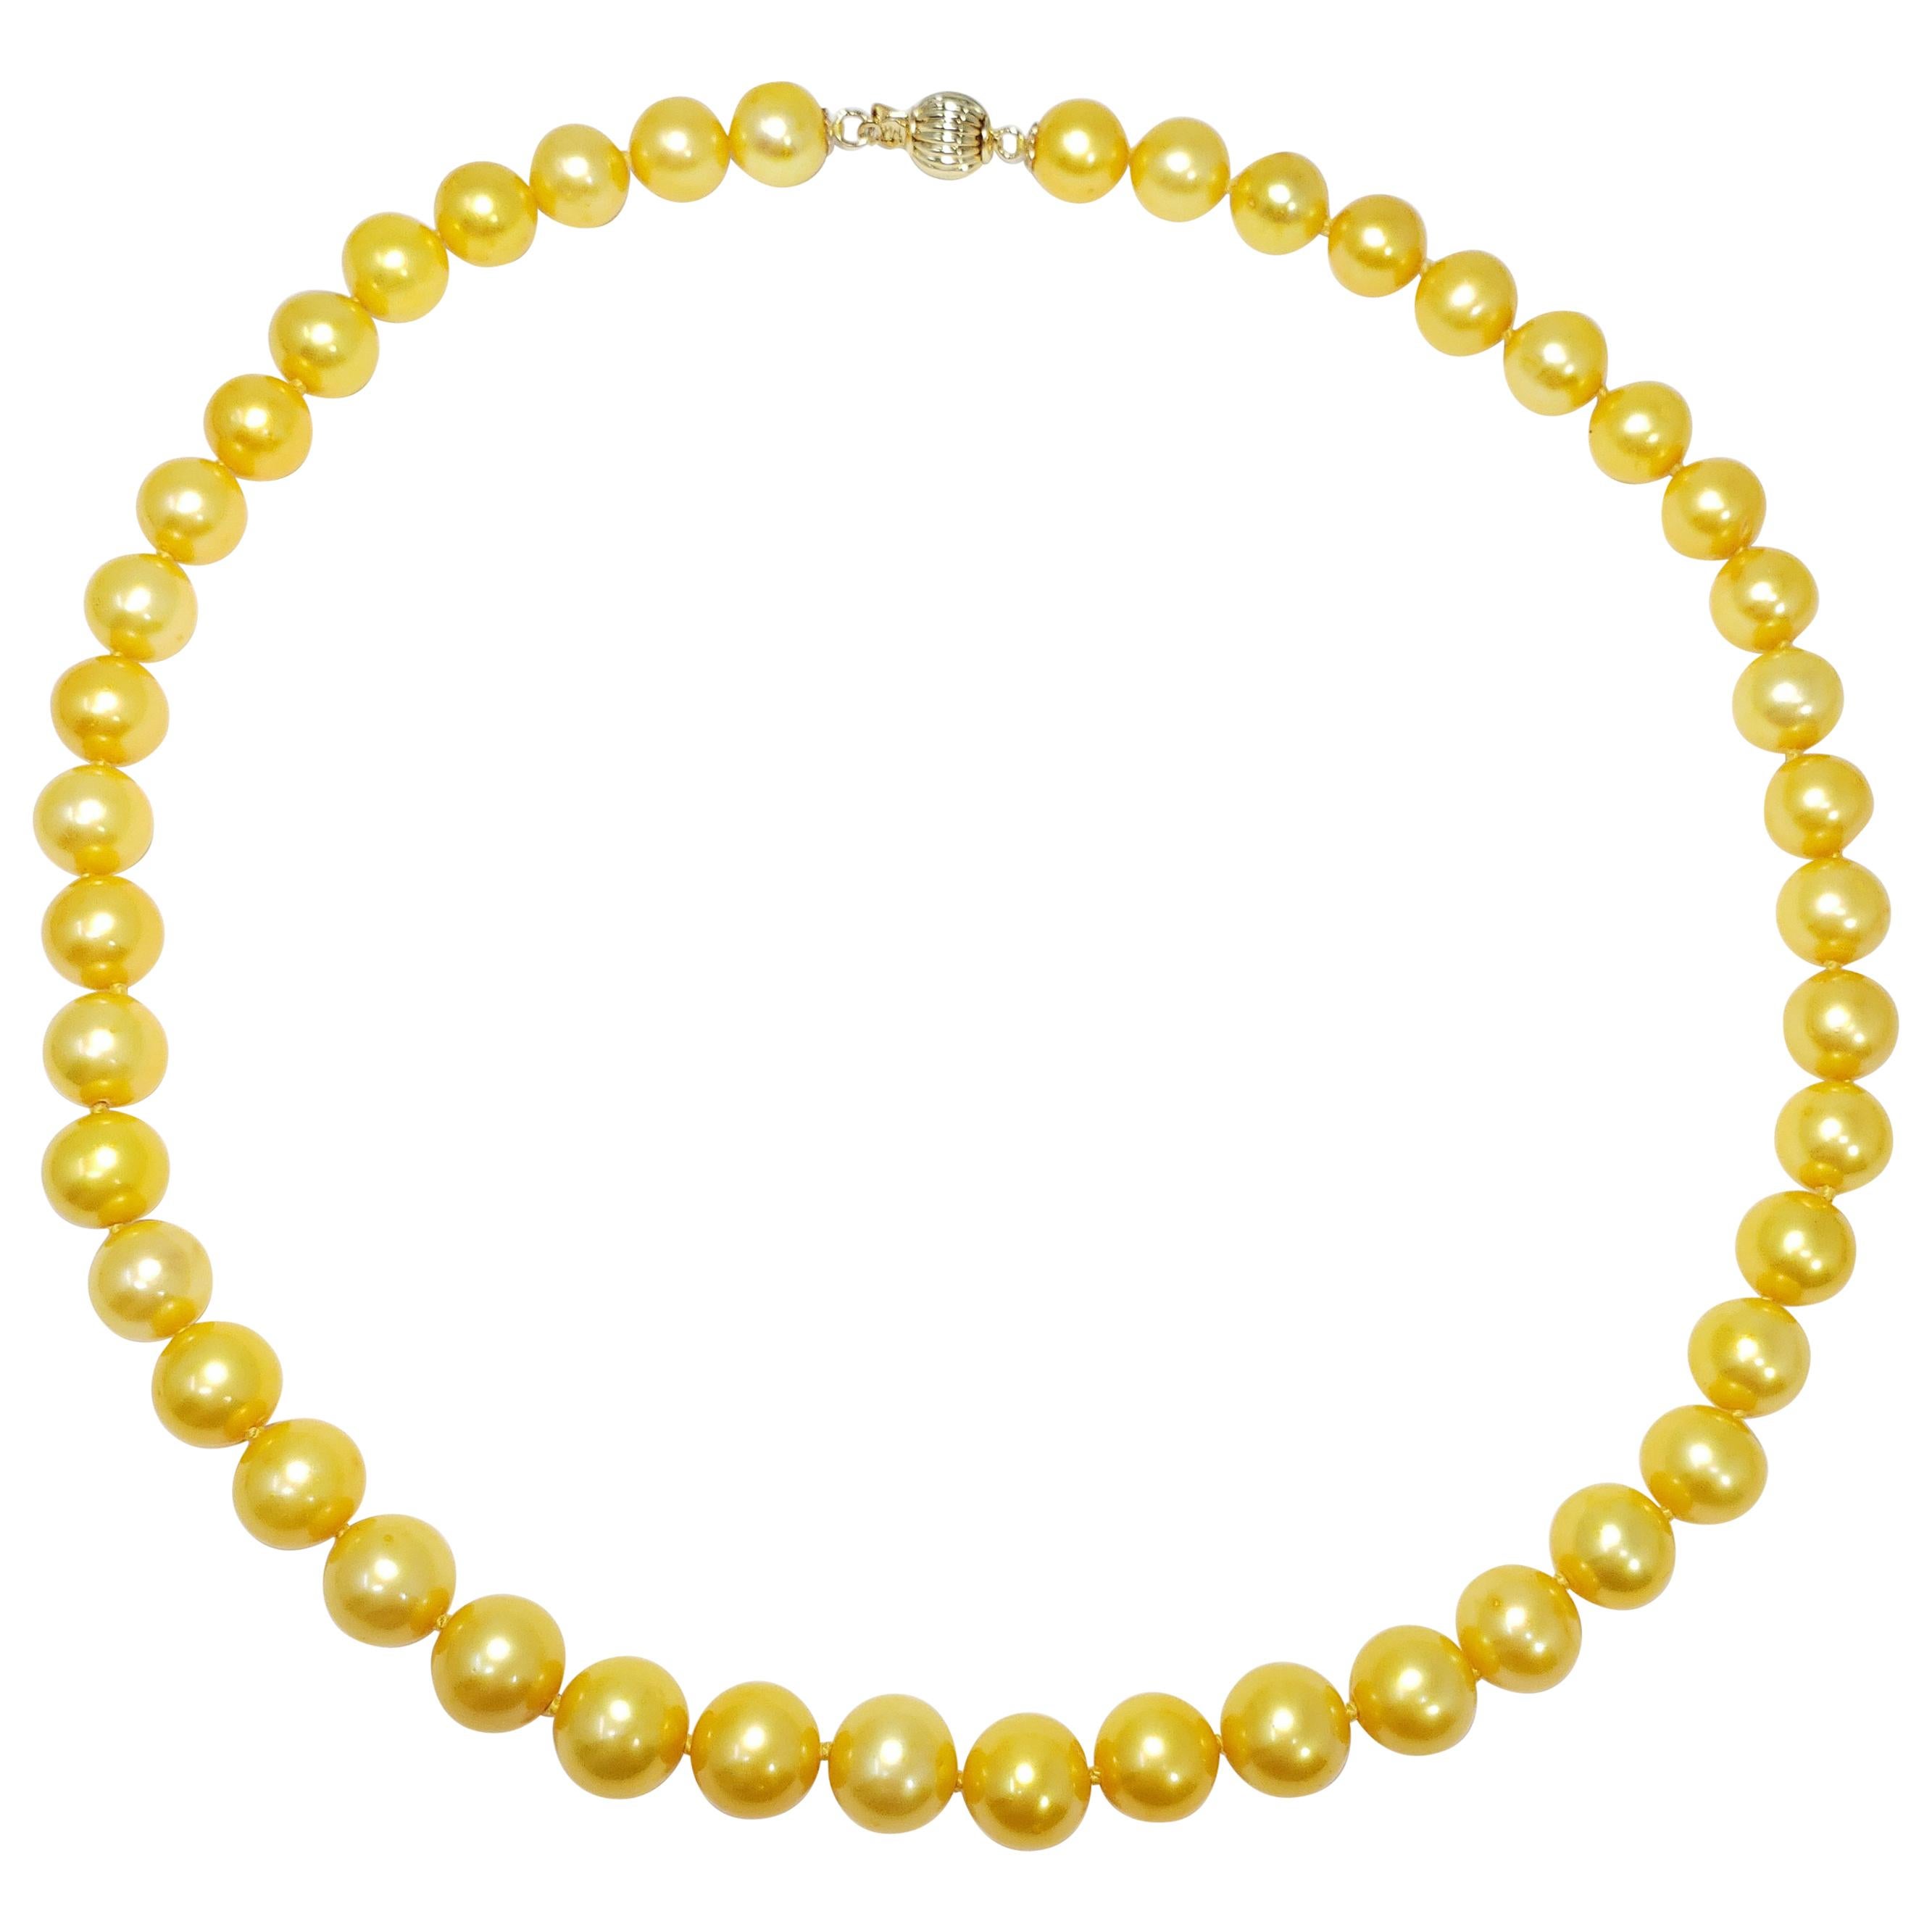 Südseeperlengeknüpfte String-Halskette mit Verschluss aus 14 Karat Gelbgold